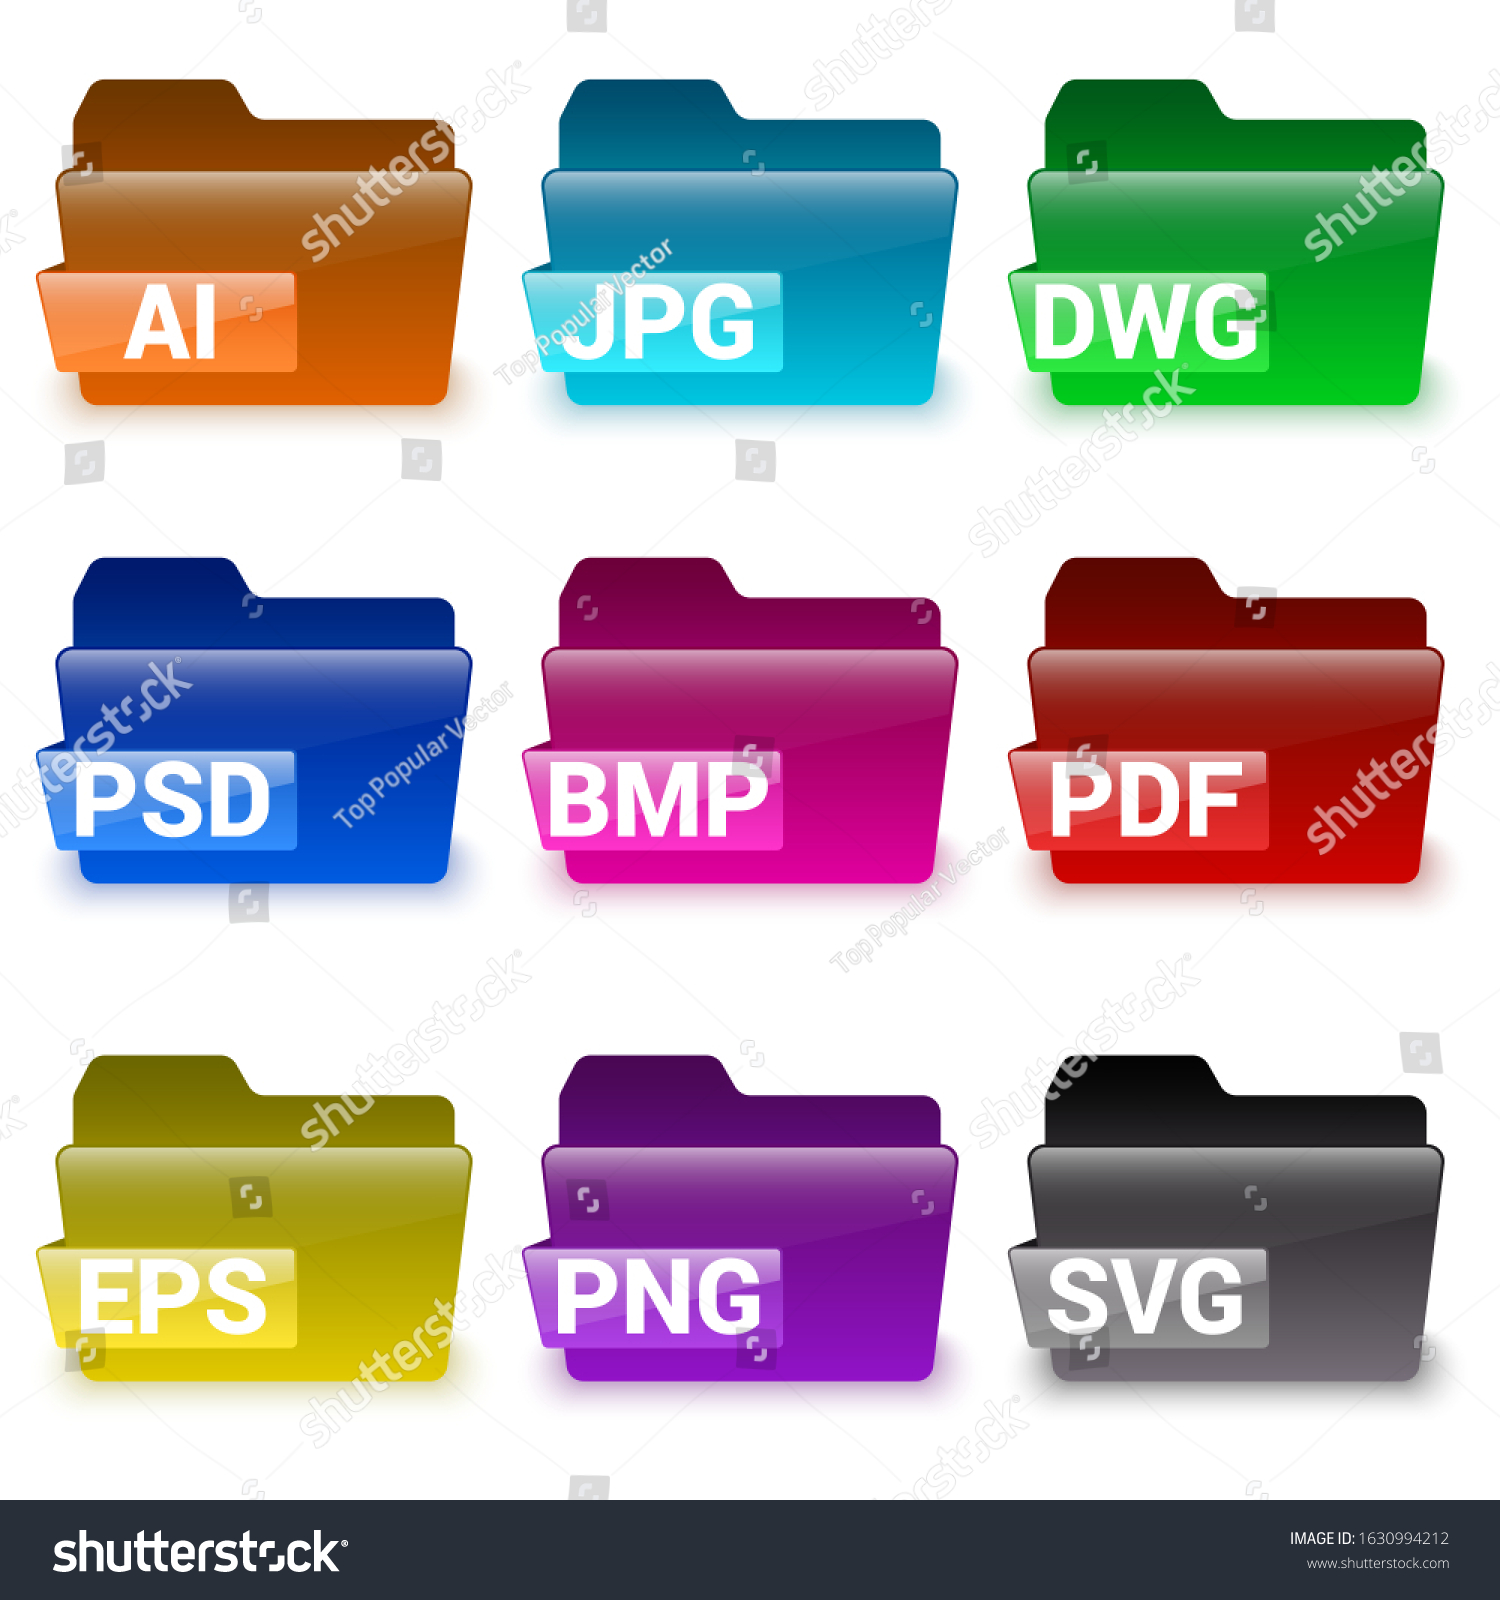 SVG of folder icon set with format file name. vector illustration  svg